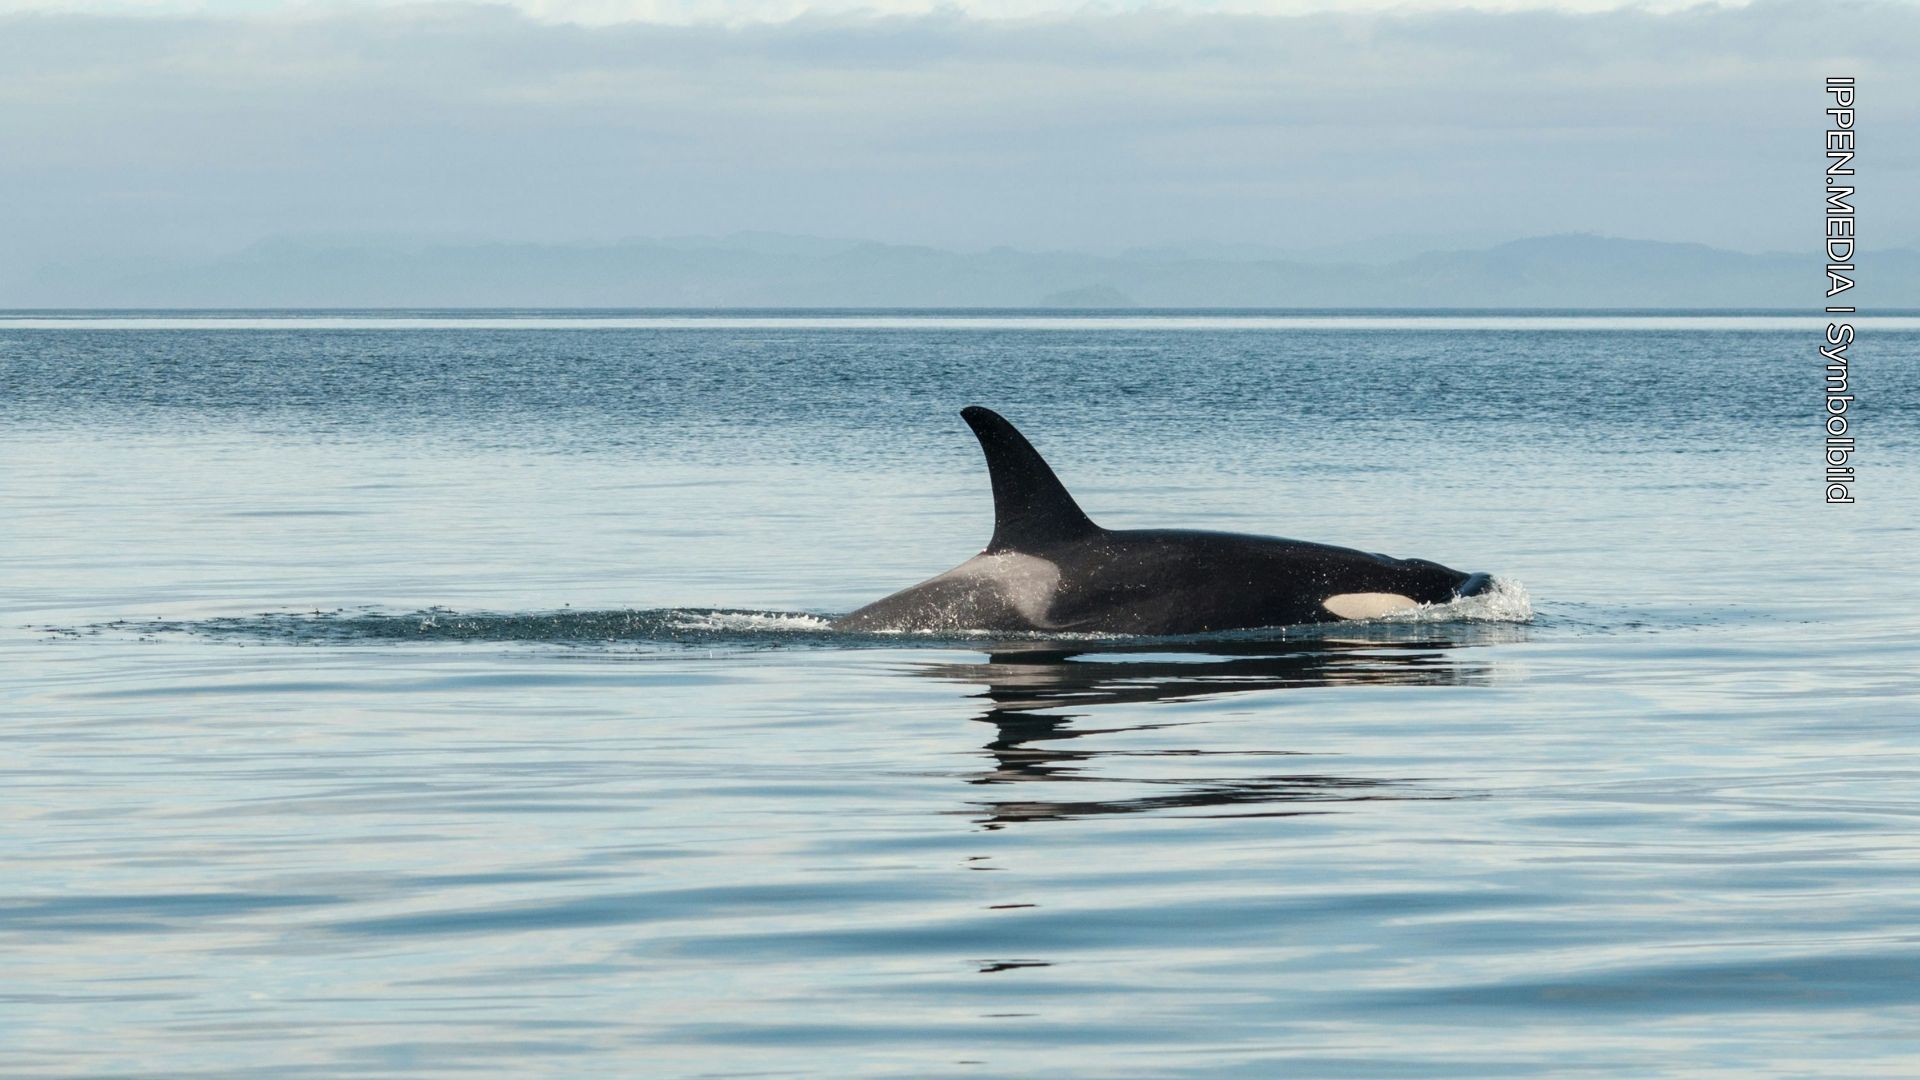 Dramatische Rettung: Orcas beschädigen Yacht in der Straße von Gibraltar